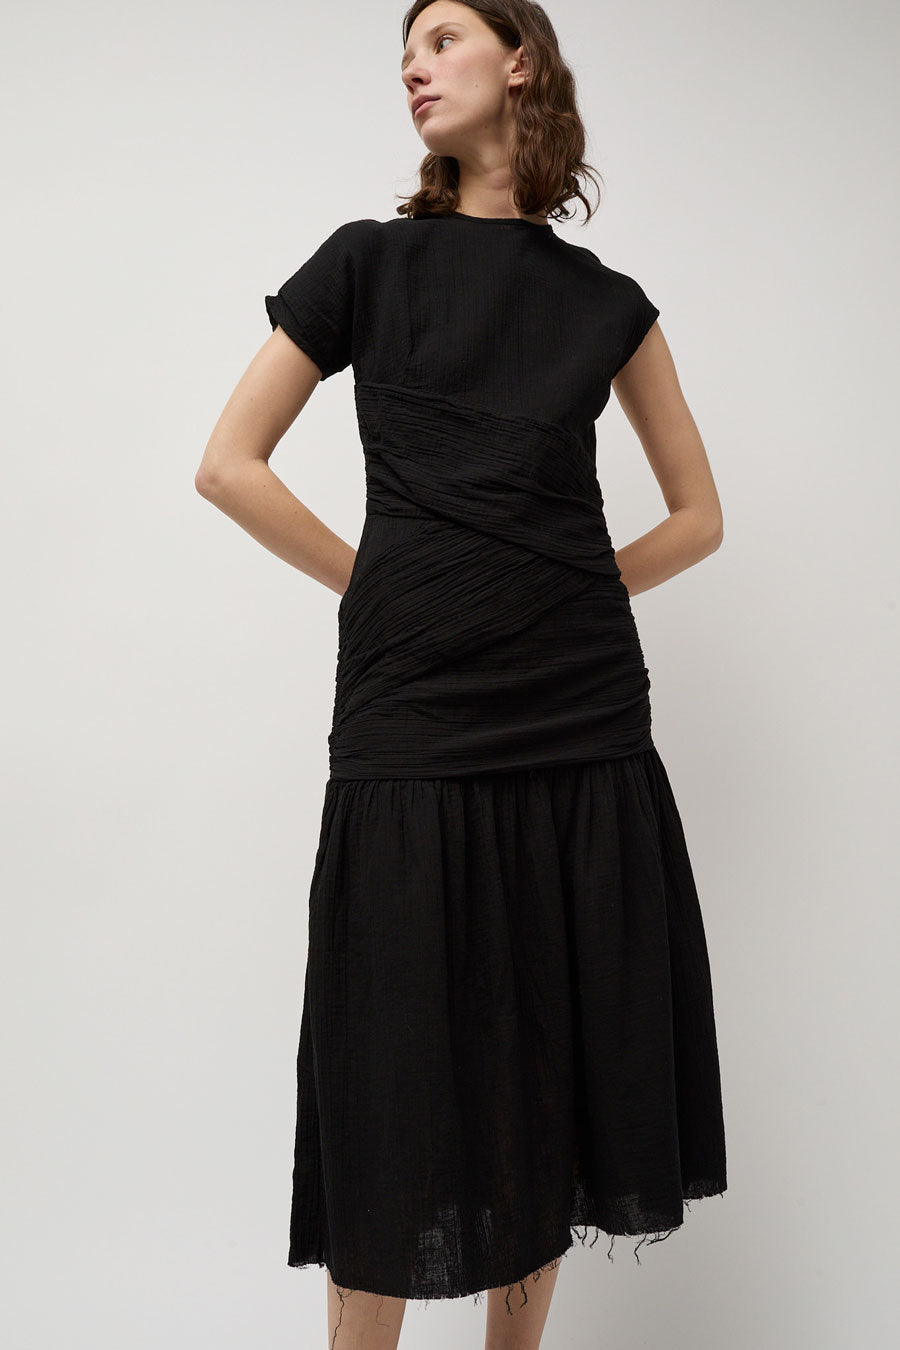 Atelier Delphine Blakeley Dress in Black